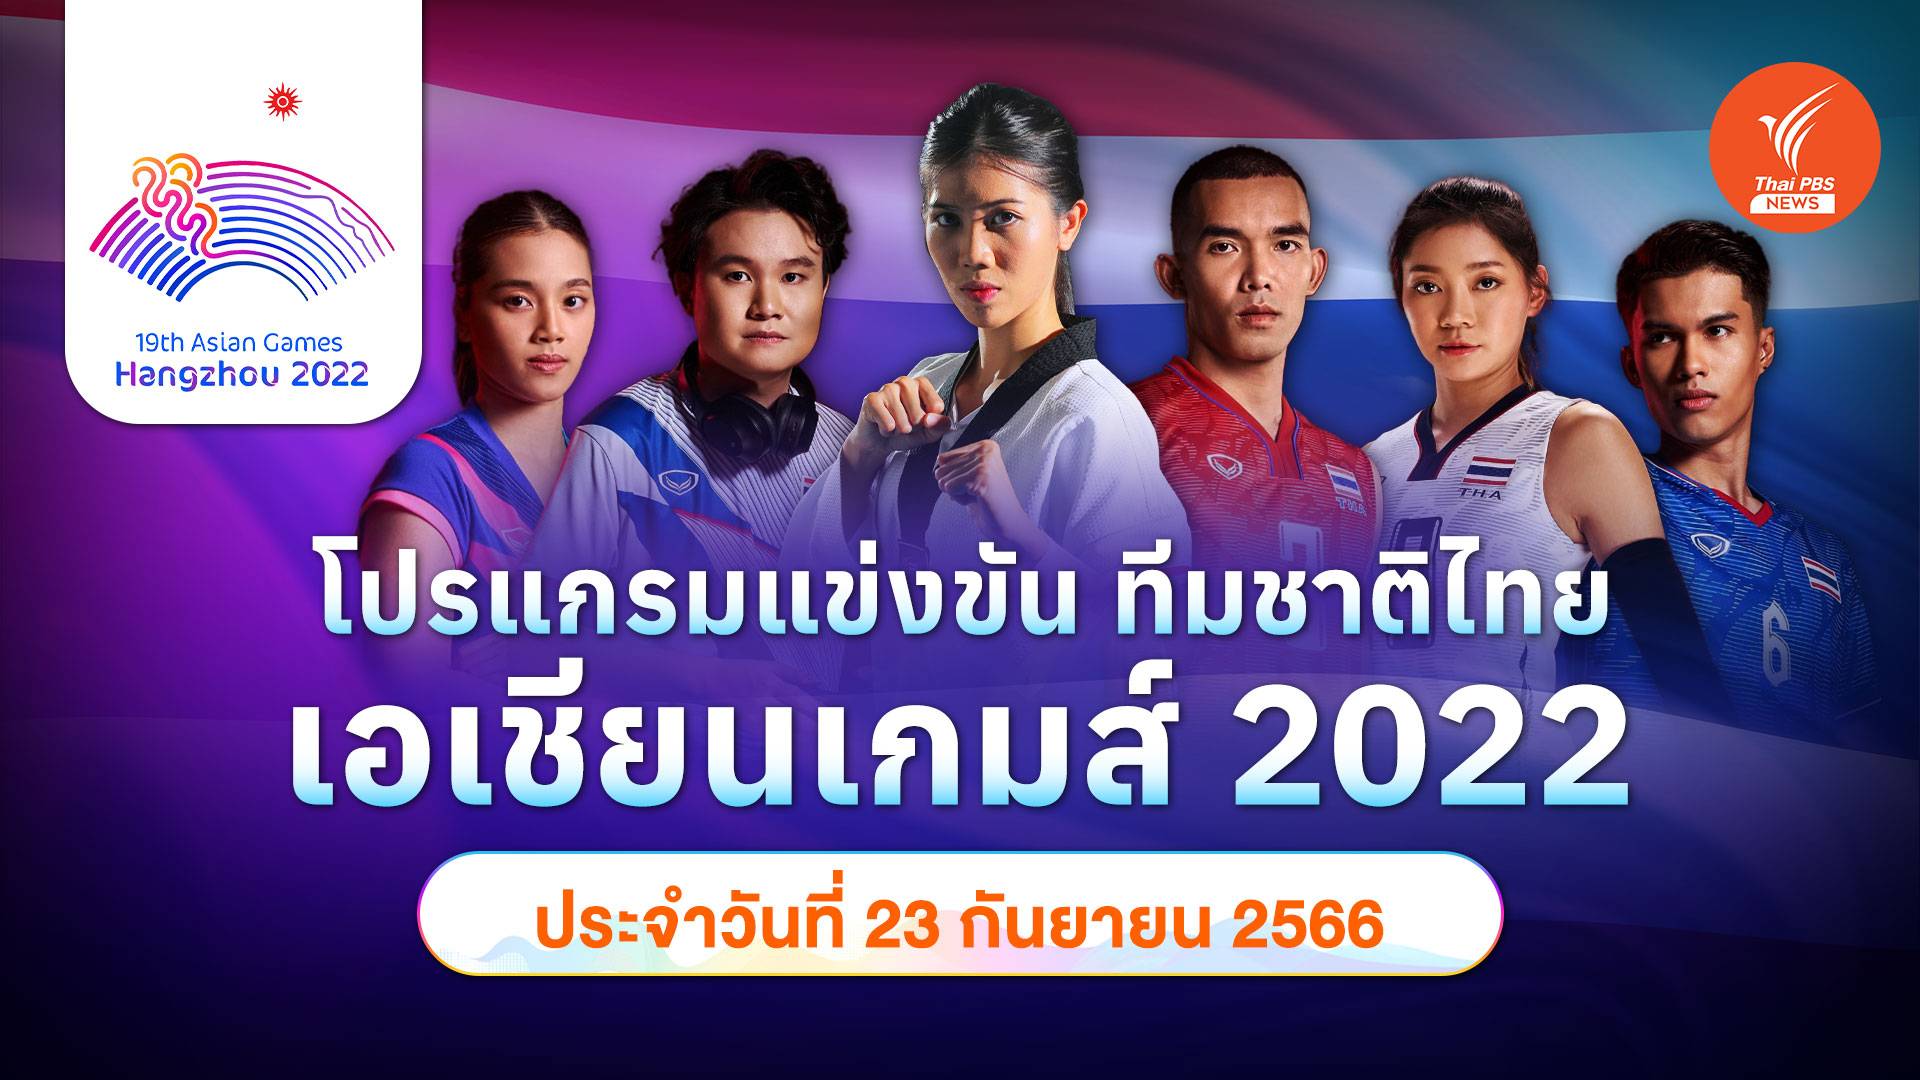 โปรแกรมการแข่งขัน เอเชียนเกมส์ 2022 ทัพนักกีฬาไทย วันที่ 23 ก.ย.66